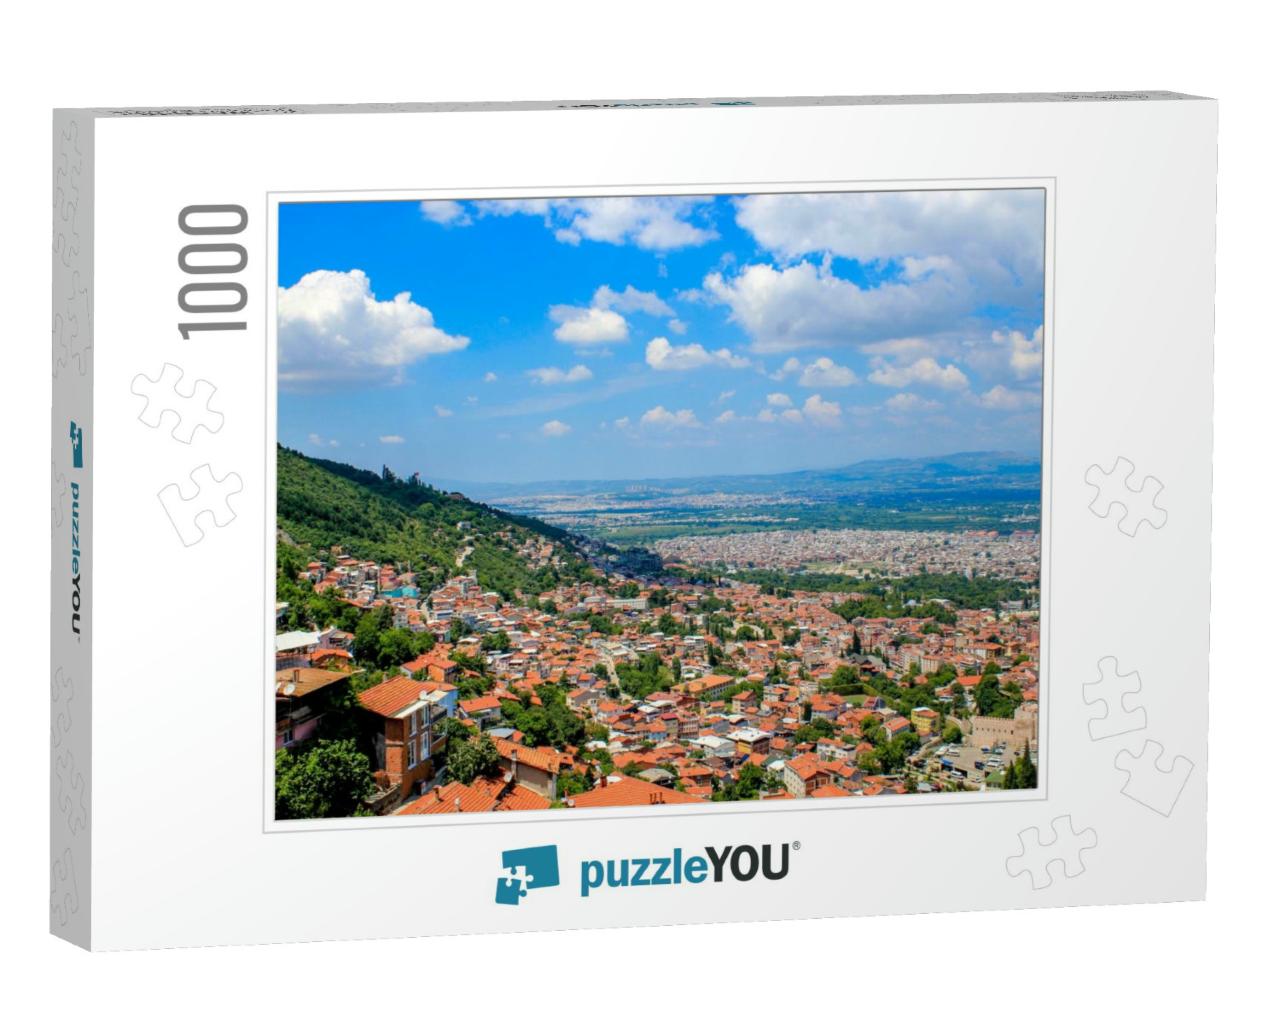 Bursa City Panoramic View, Bursa, Turkey... Jigsaw Puzzle with 1000 pieces